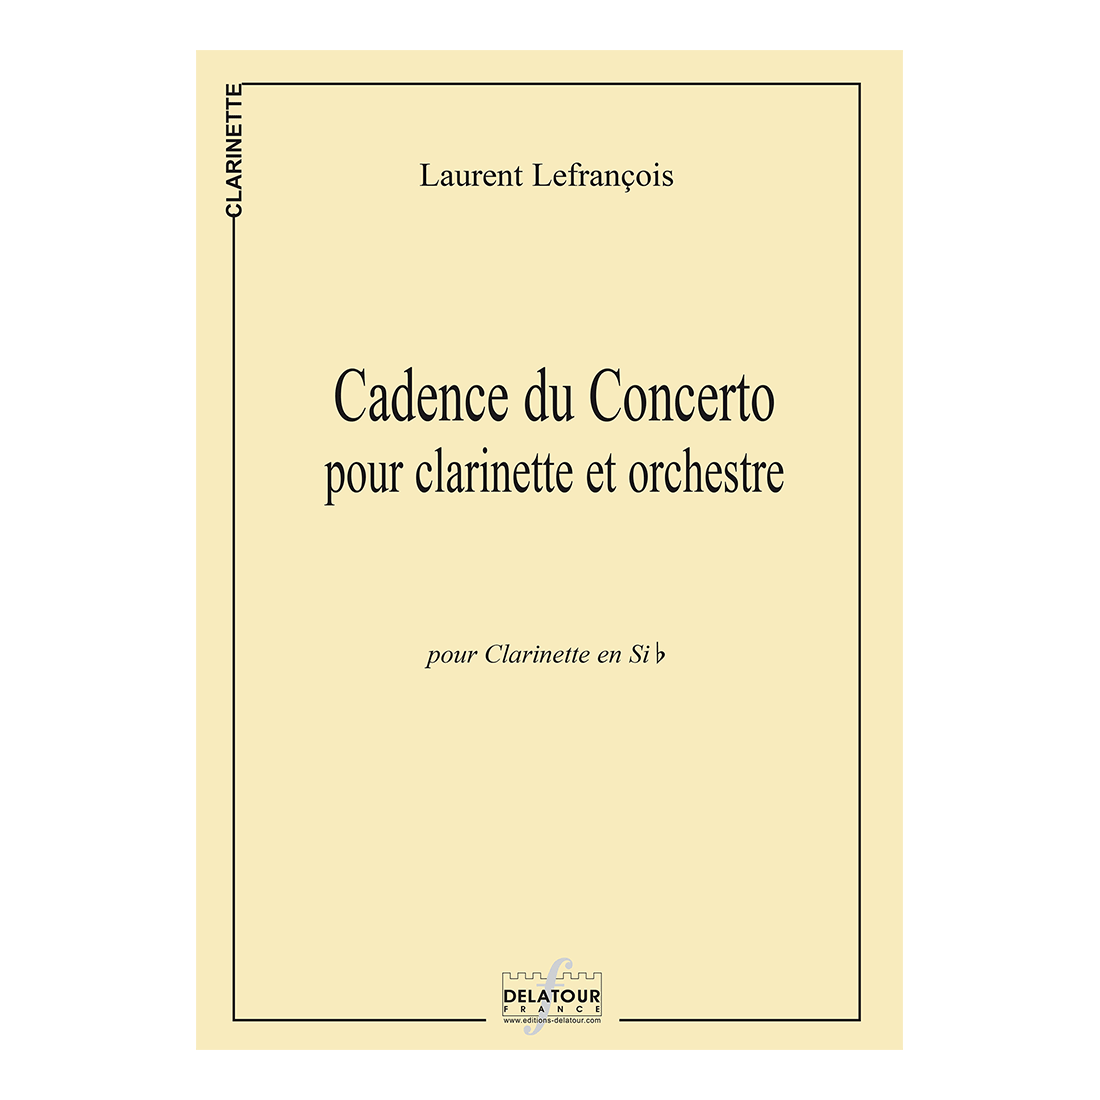 Kadenz des Konzertes für Klarinette und Orchester